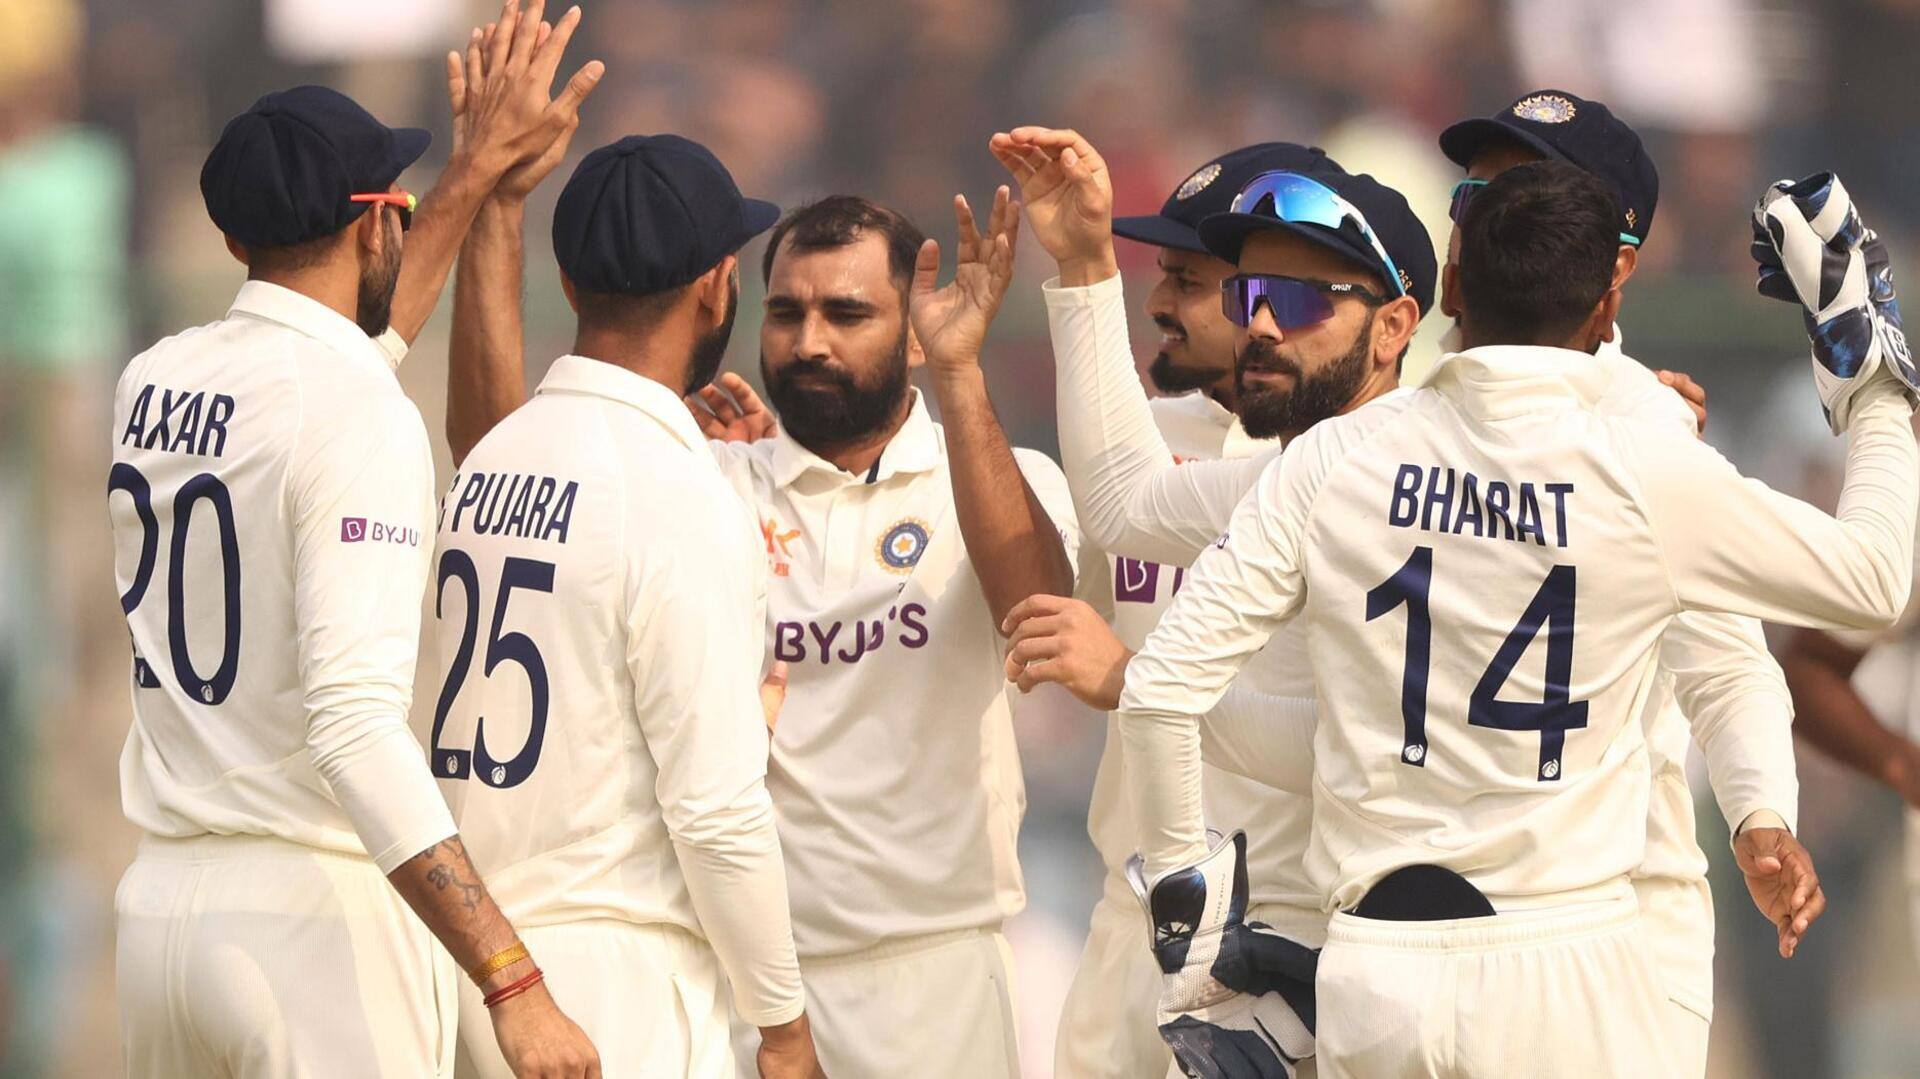 वेस्टइंडीज बनाम भारत: एक-दूसरे के खिलाफ टेस्ट में कैसा रहा है प्रदर्शन? जानिए आंकड़े 